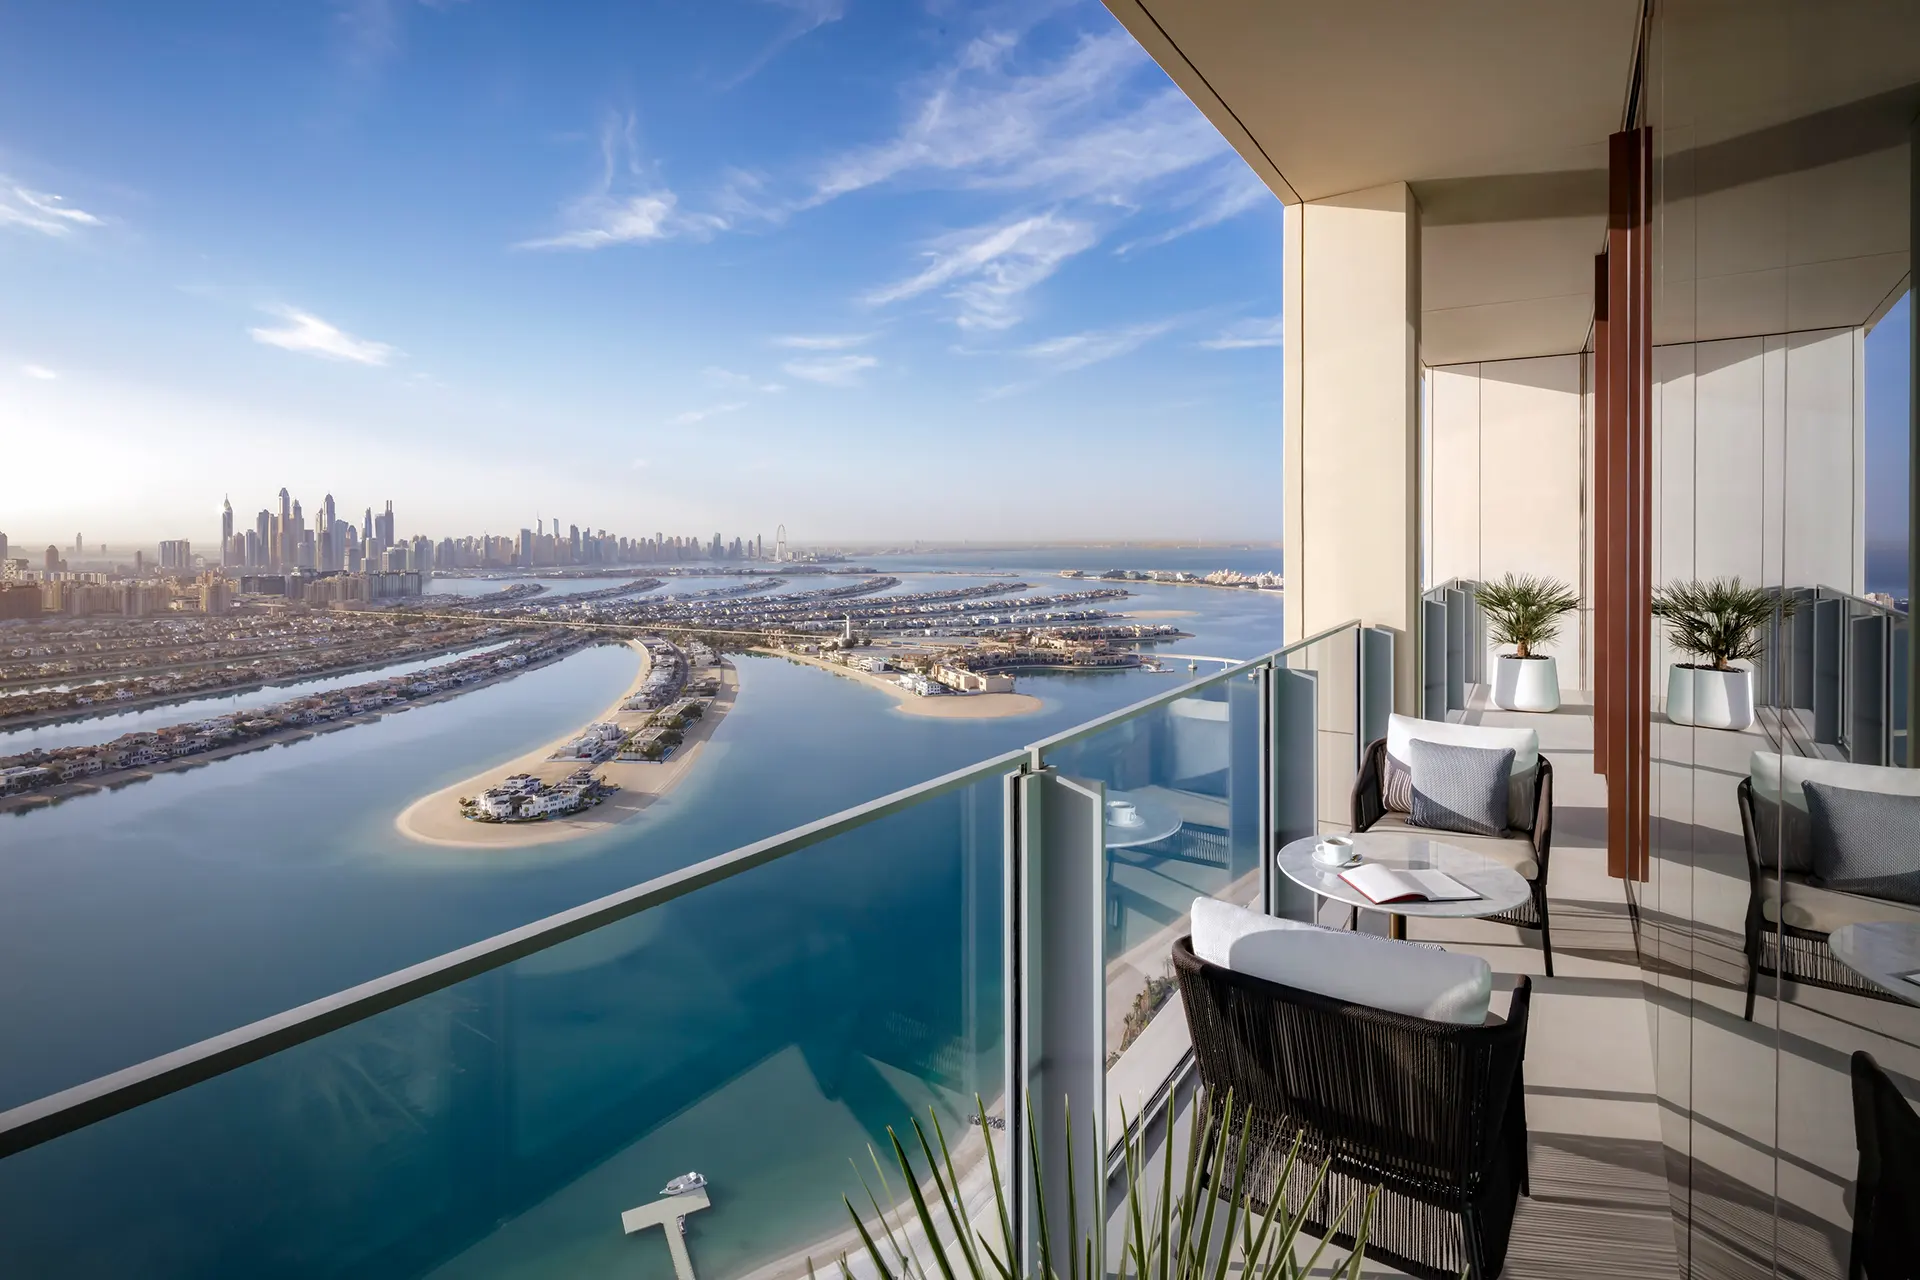 Blick auf die Skyline Dubais von Balkon aus